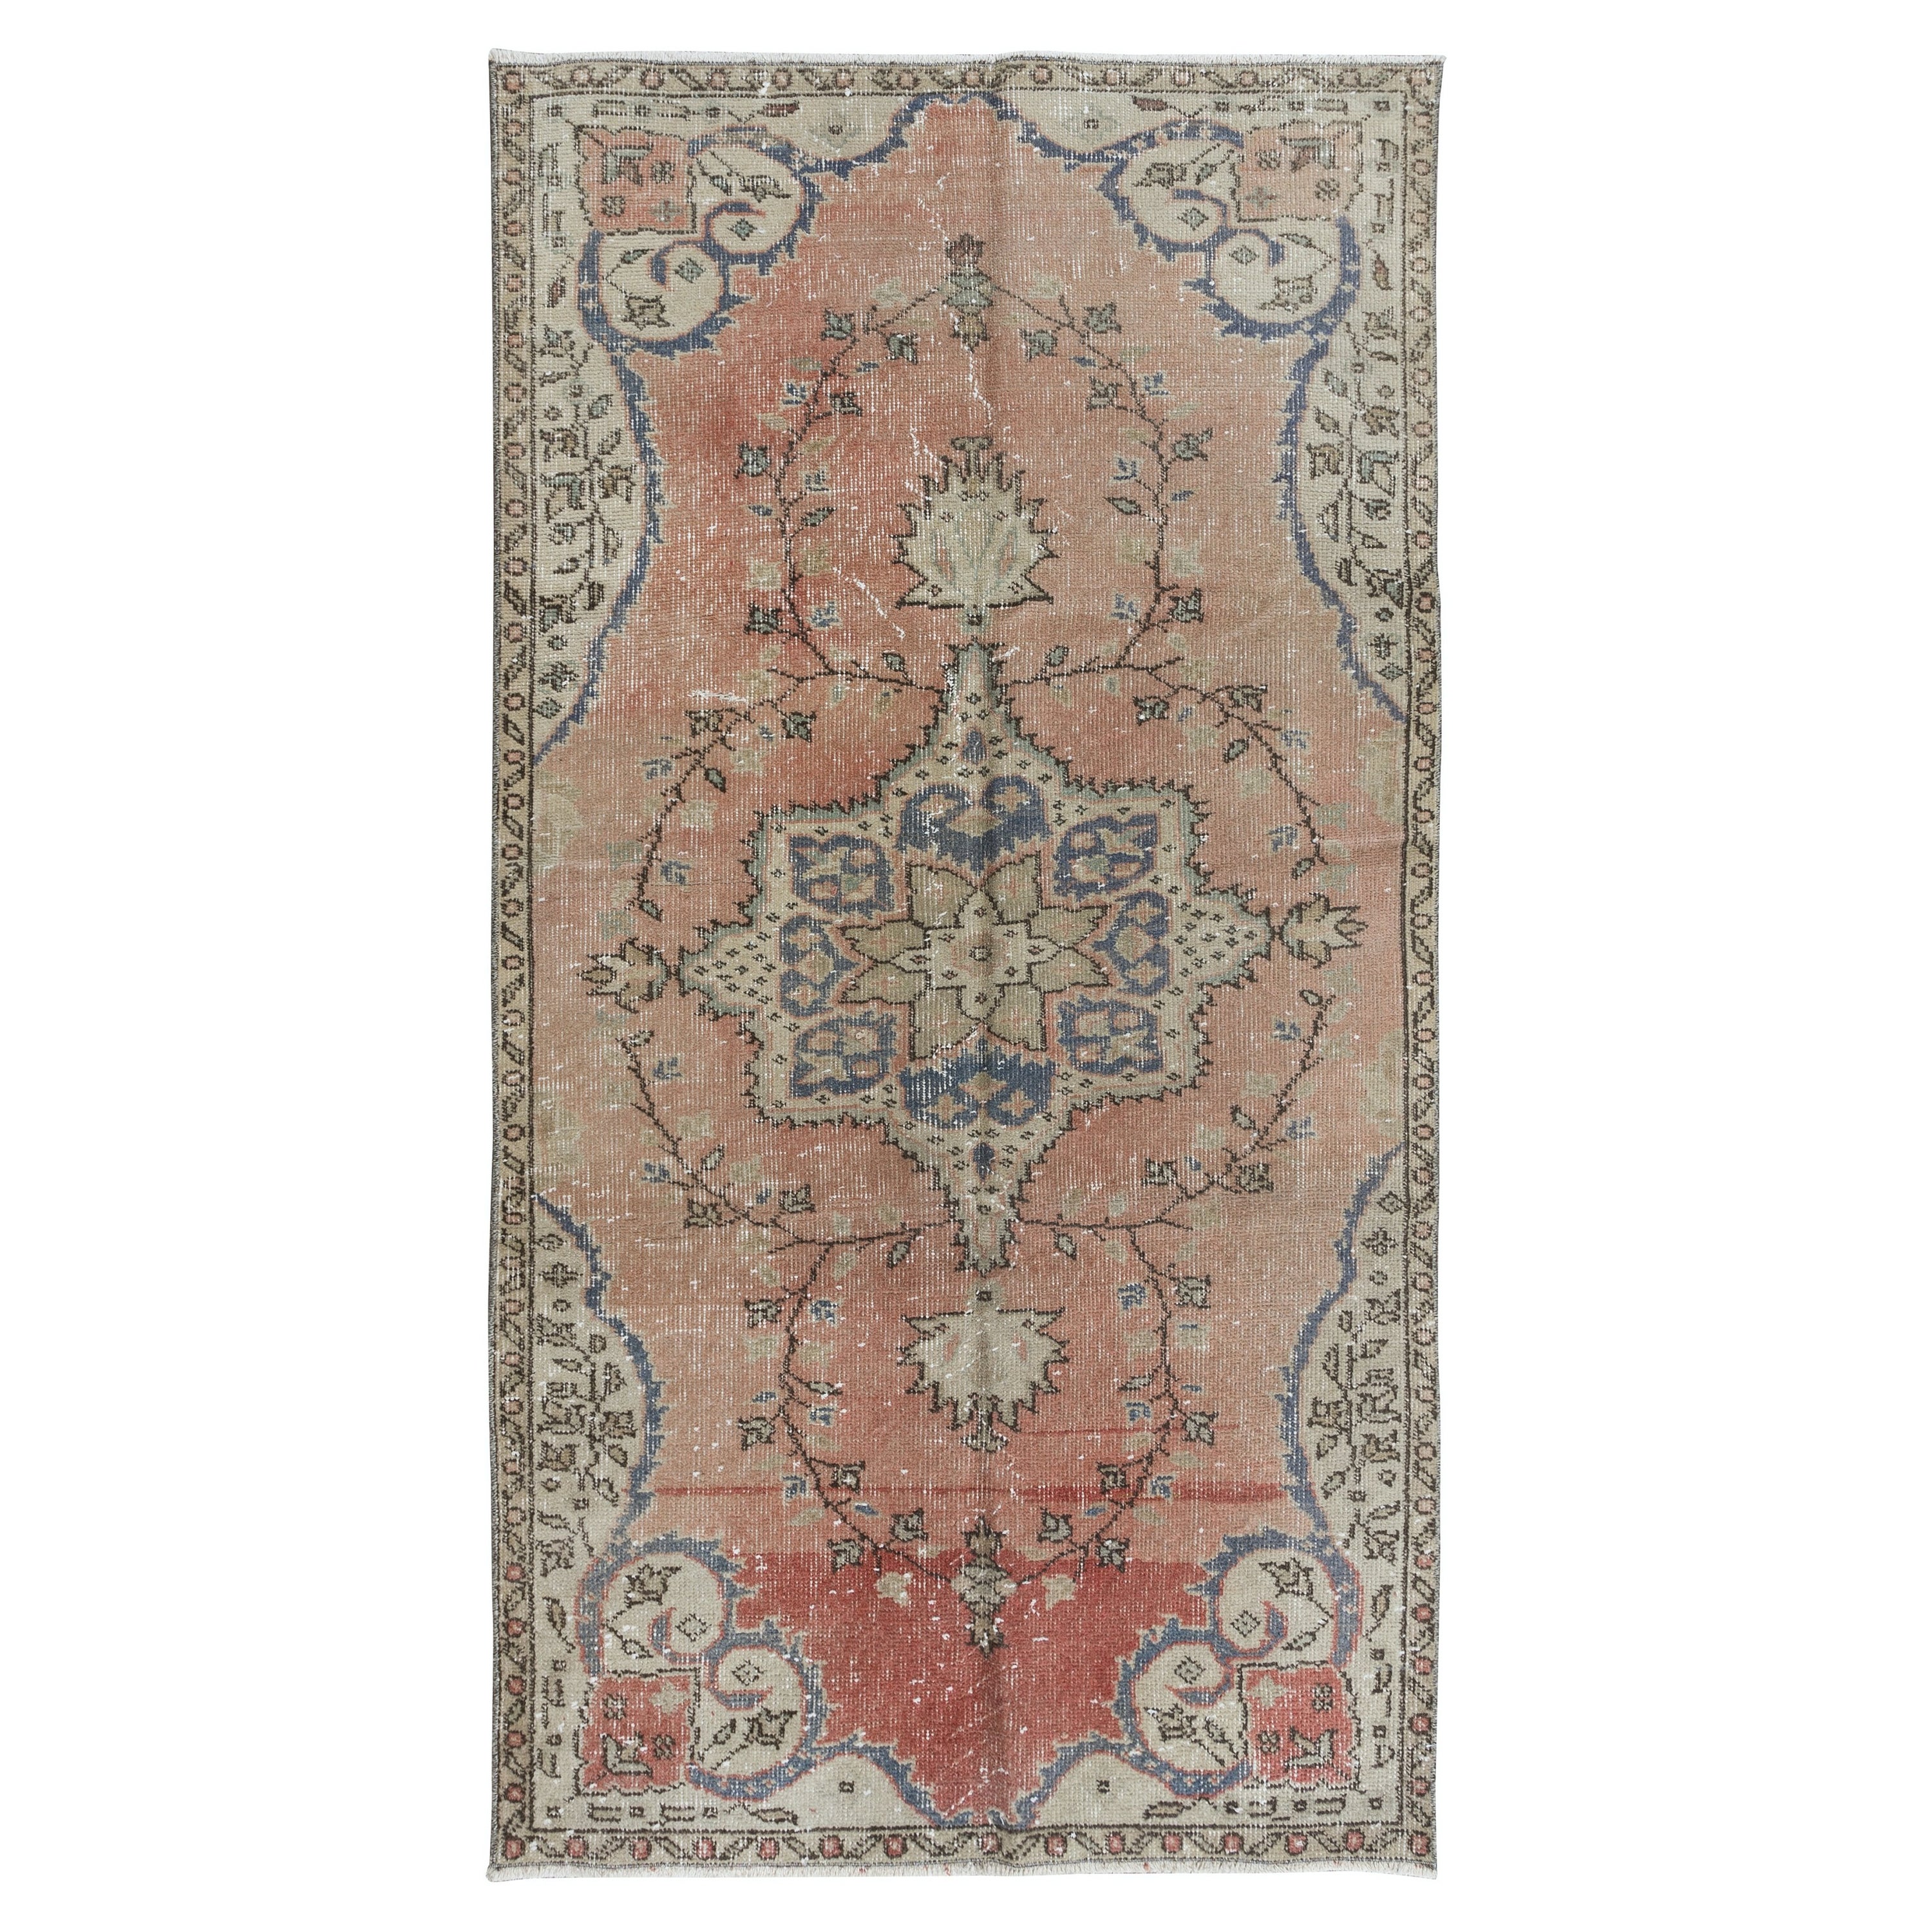 3.5x6,4 Ft Handgeknüpfter türkischer Vintage-Teppich in weichem Rot, Beige & Marineblau